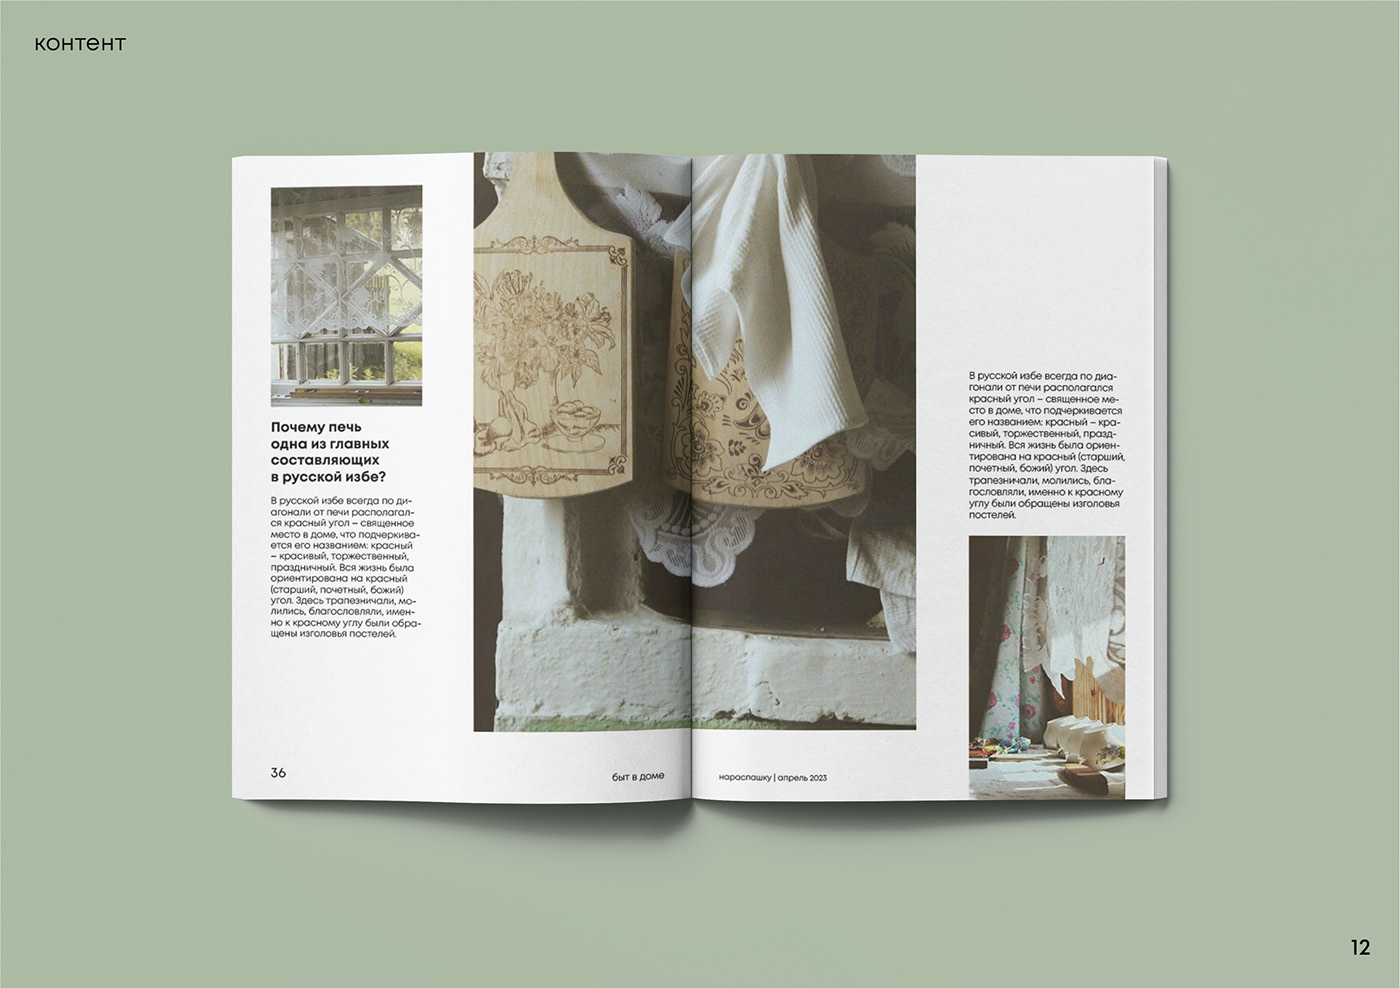 Zine  Zine Design magazine Magazine design верстка верстка журнала InDesign typography   book design publishing  